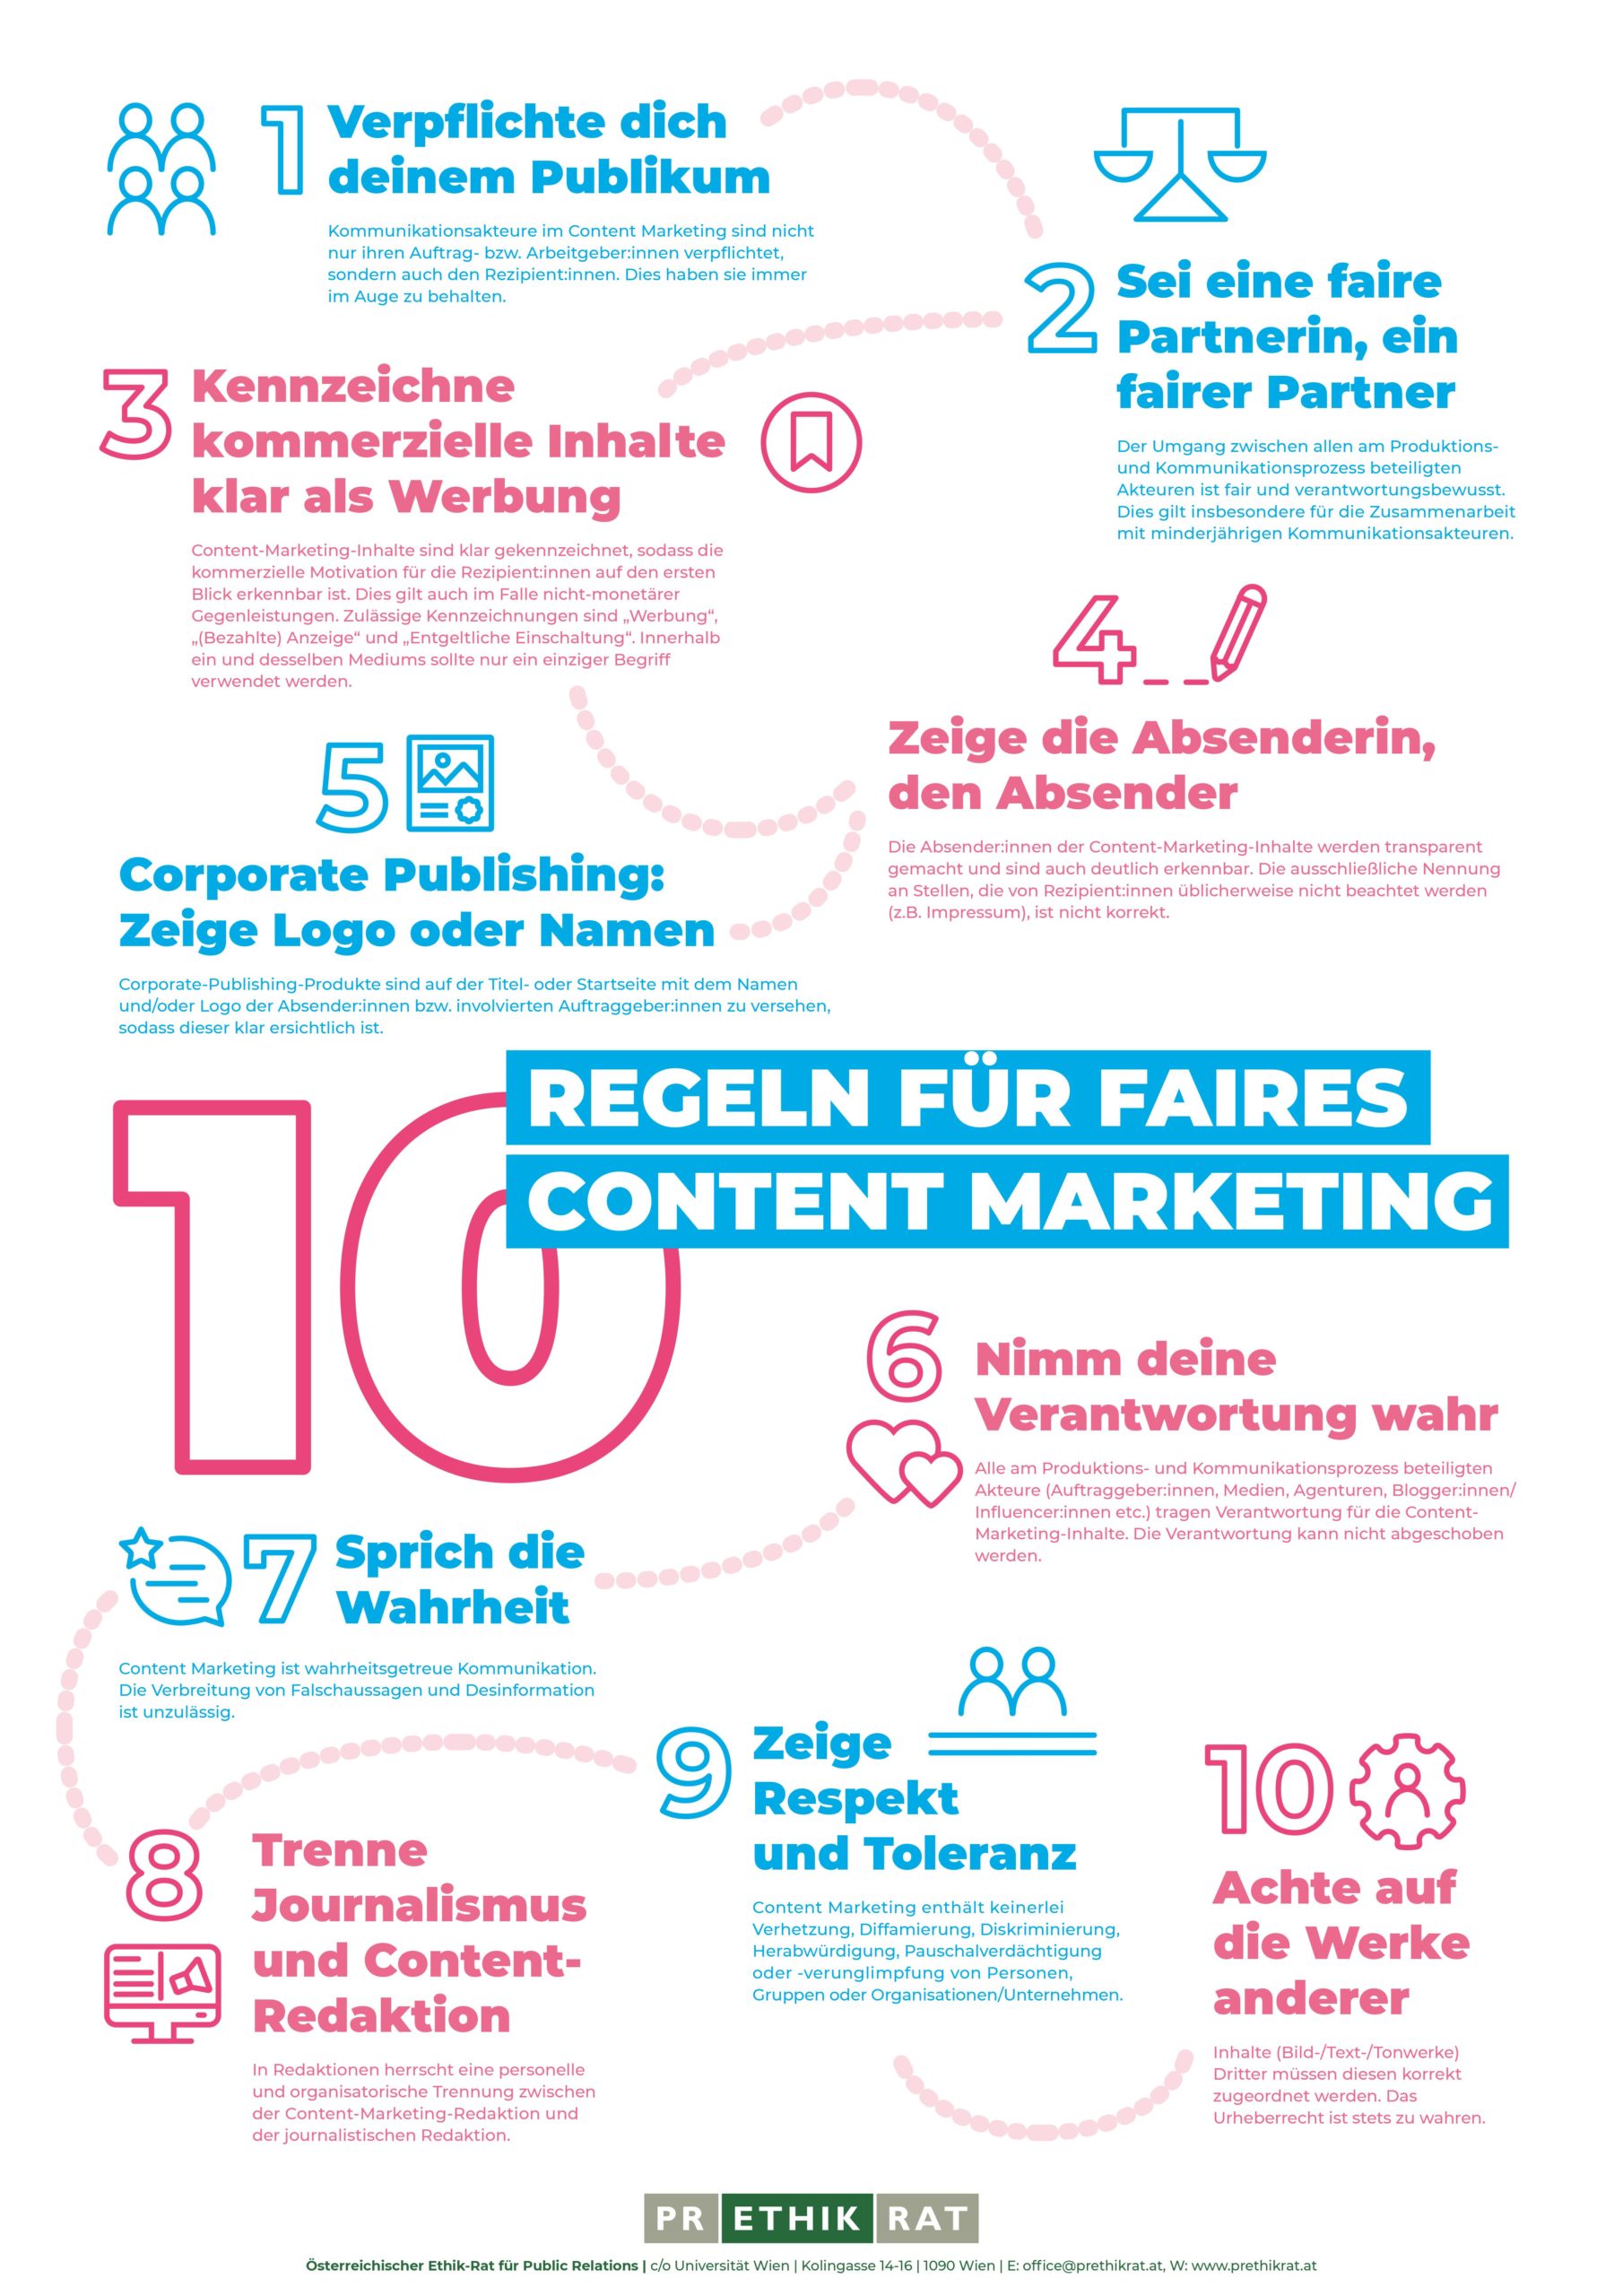 10 Regeln für faires Content Marketing als Plakat